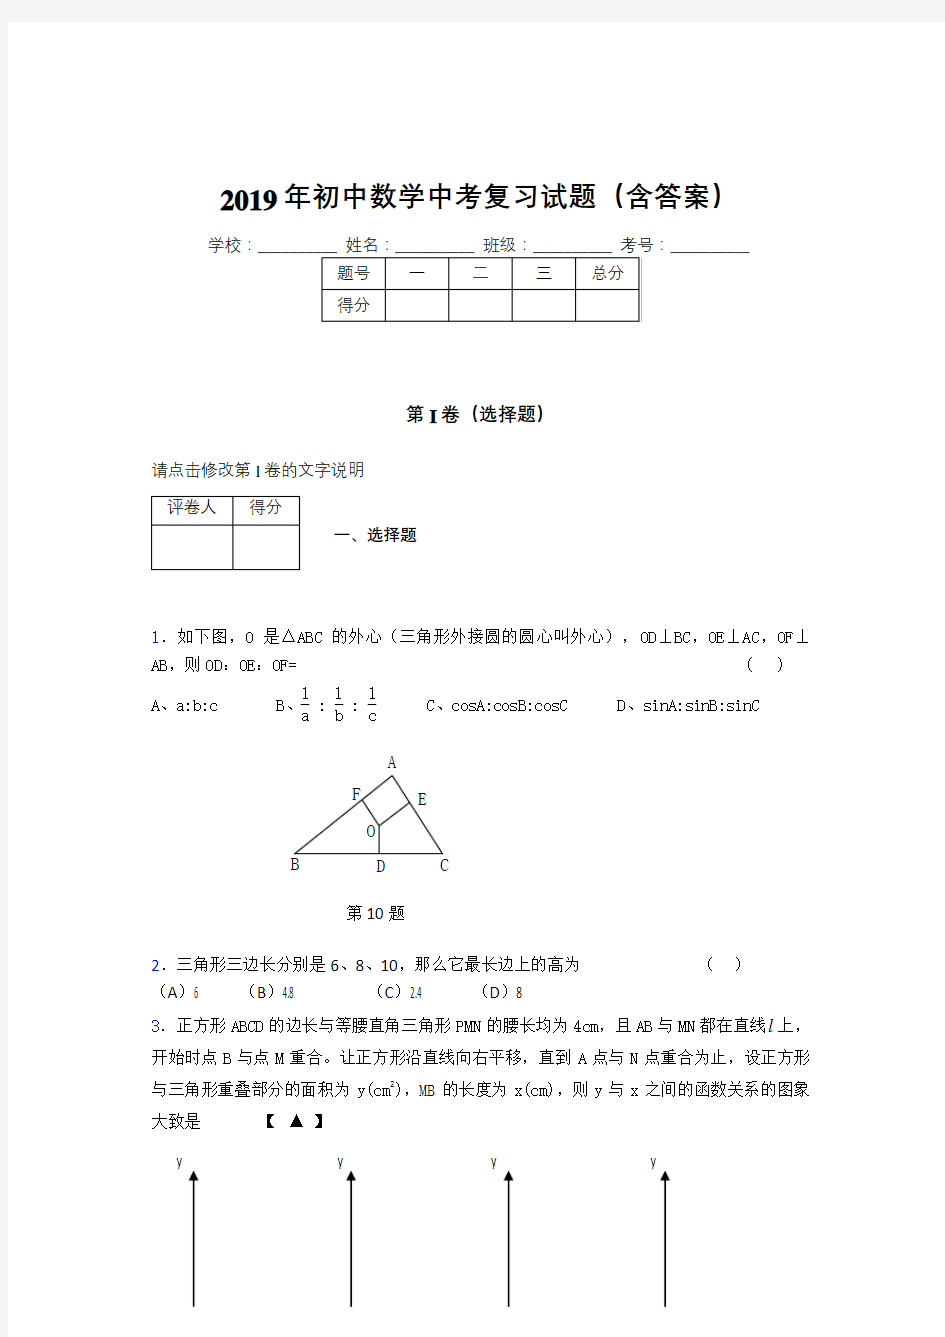 新版精选初中数学中考考试题库(含标准答案)